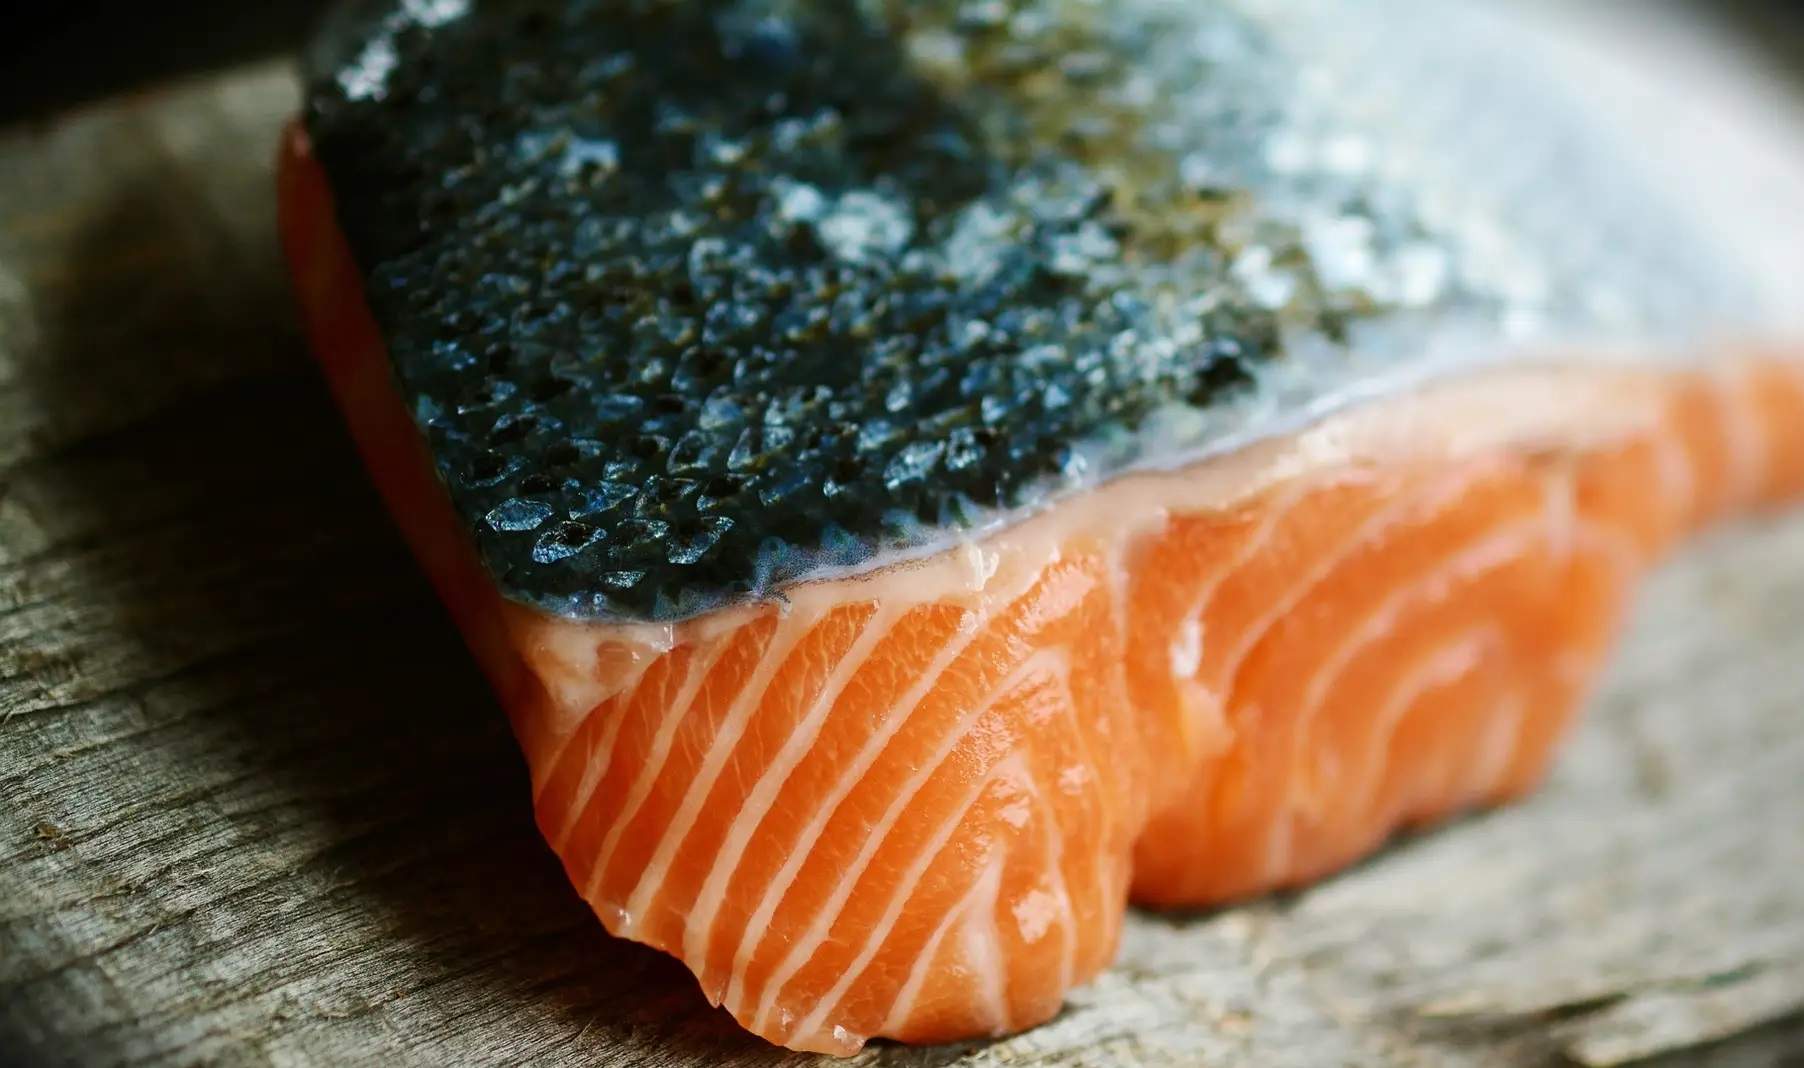 És bo menjar-se la pell del peix? Els experts en dicten sentència